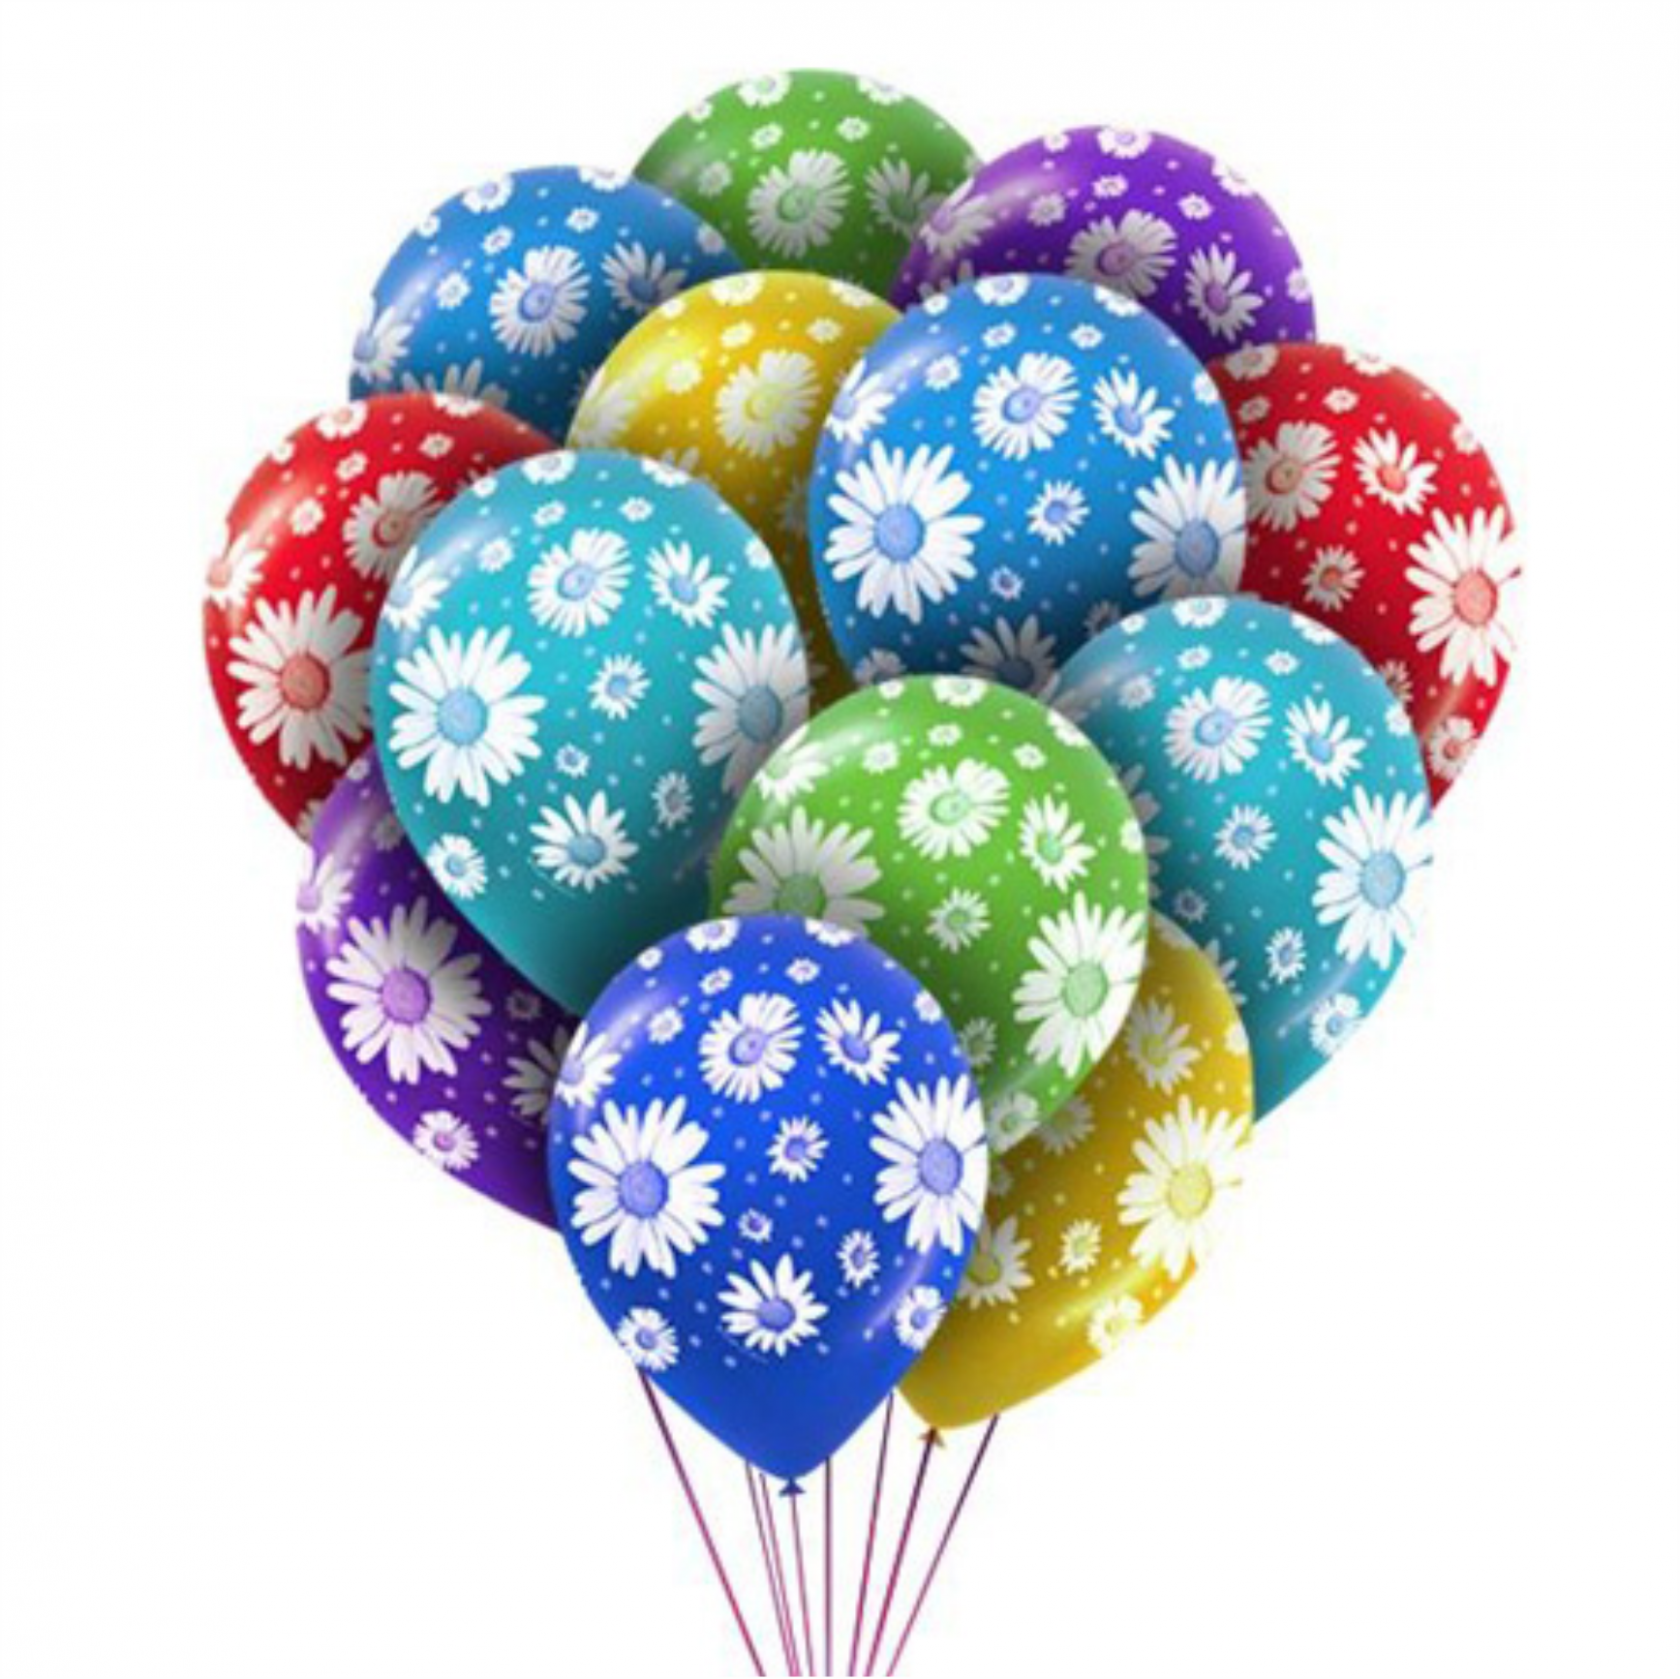 Купить воздушные шары москва недорого с доставкой. Цветные шары. Воздушные шары. Разноцветные шарики воздушные. Шары надувные.